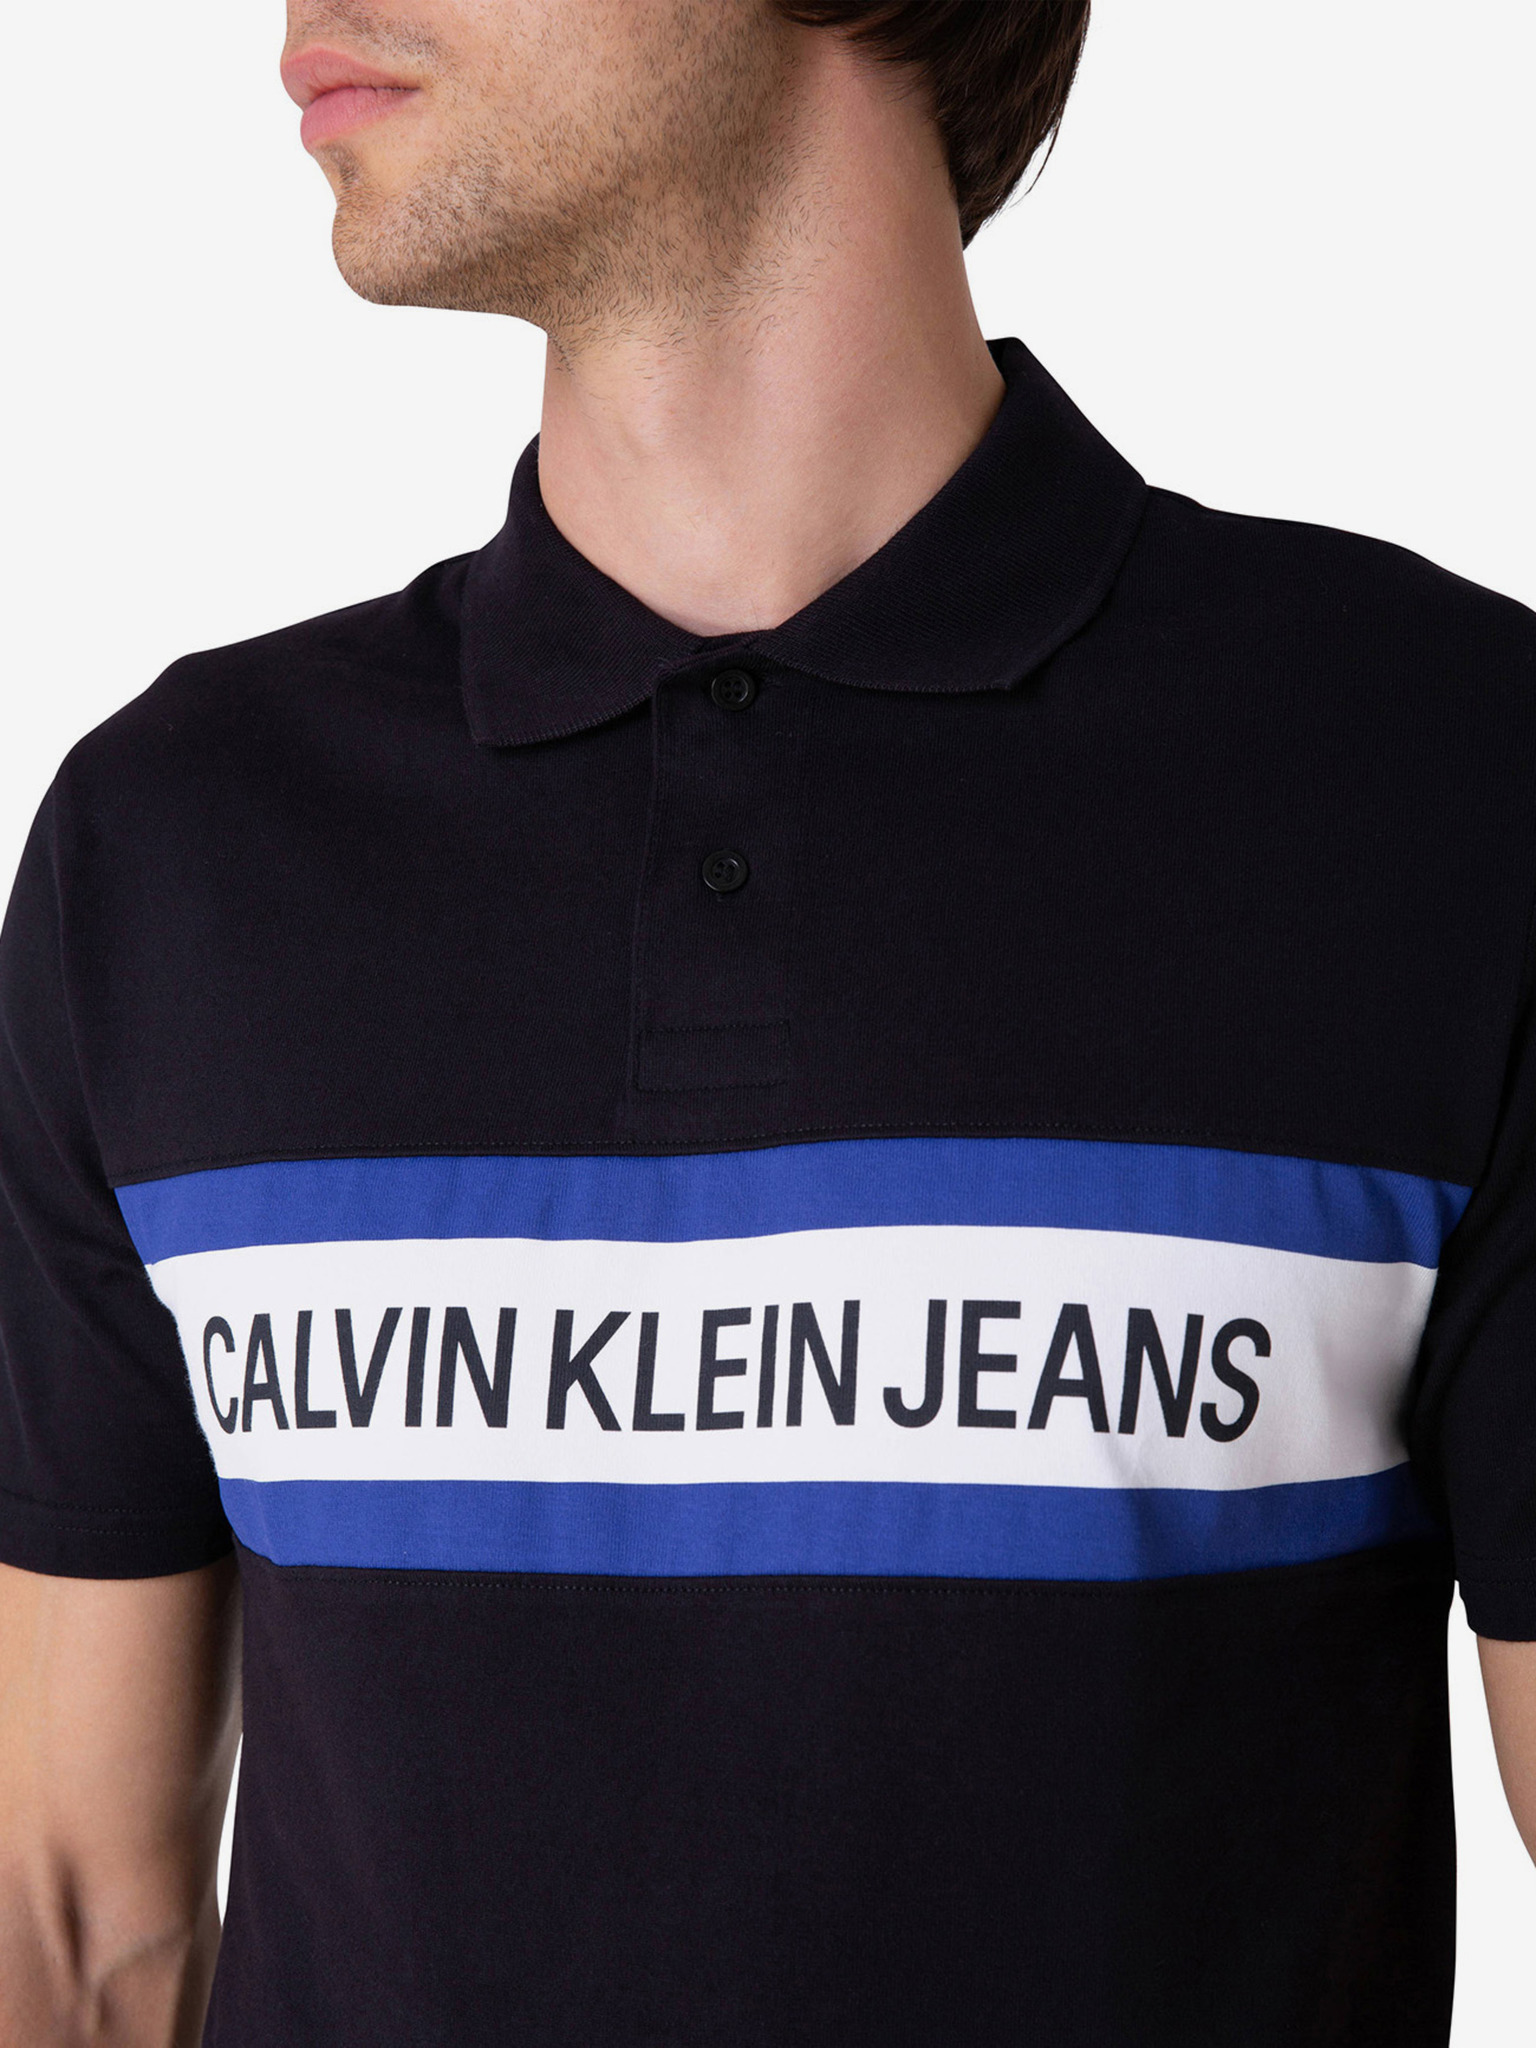 Calvin Klein - T-shirt 